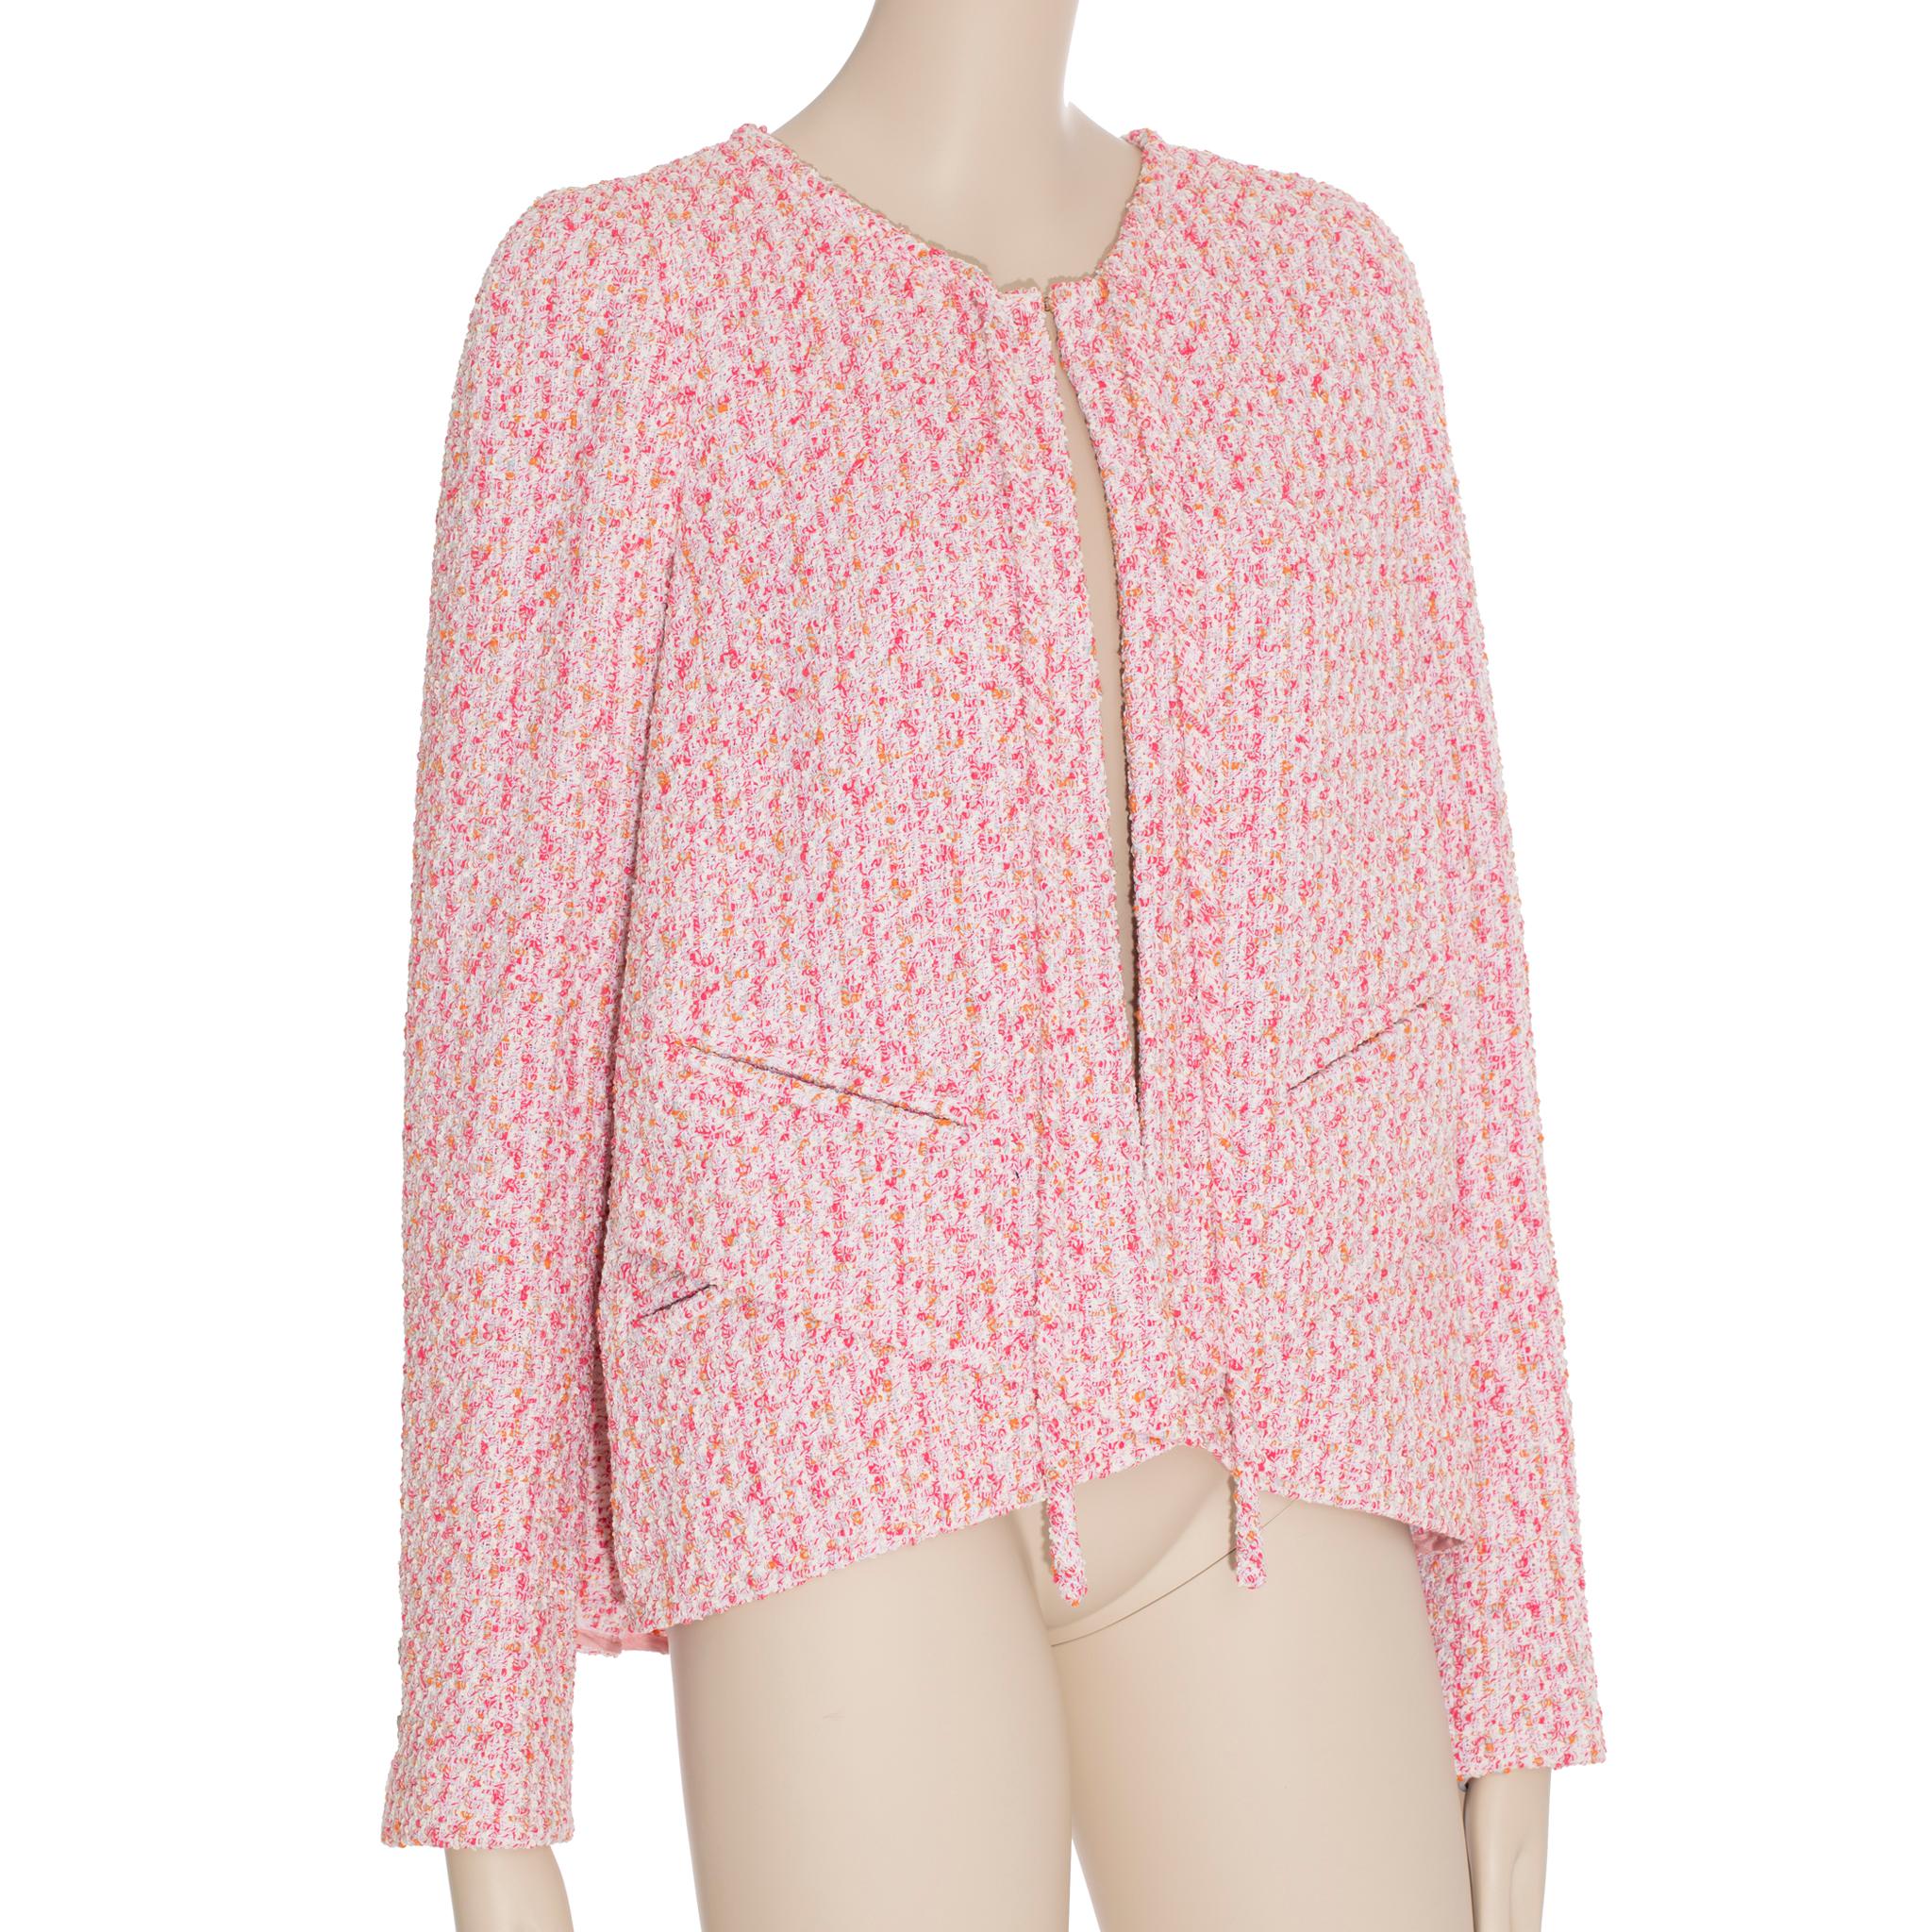 Das Chanel Pink Tweed Cape/Jacke ist eine modische und elegante Ergänzung für jede Garderobe. Dieses Kleidungsstück im raffinierten Umhang-Stil verbindet klassisches Design mit moderner Raffinesse. Dieses zeitlose Kleidungsstück eignet sich perfekt